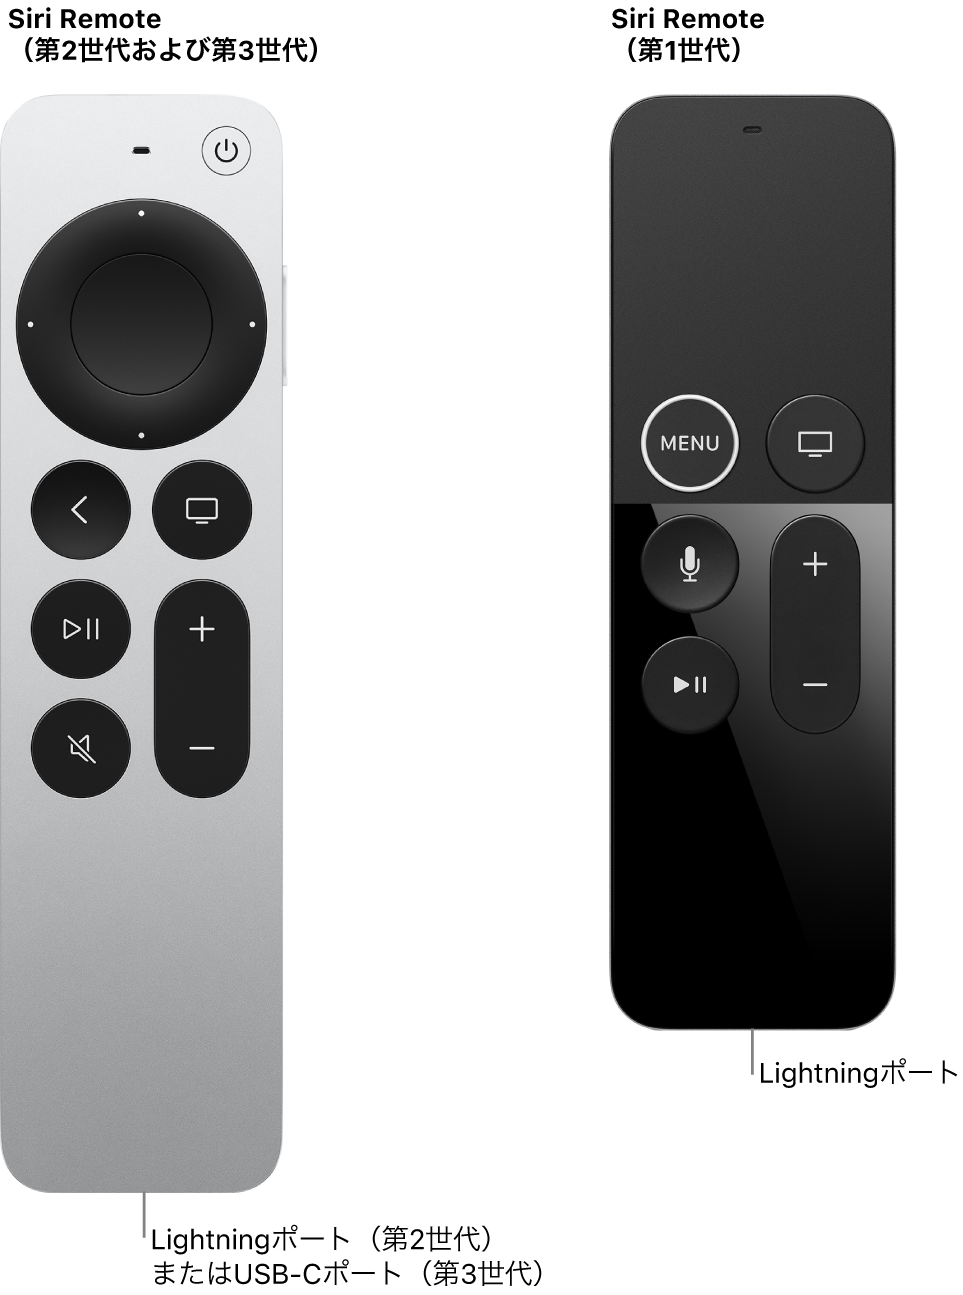 コネクタポートが示されているSiri Remote（第2世代および第3世代）とSiri Remote（第1世代）の画像